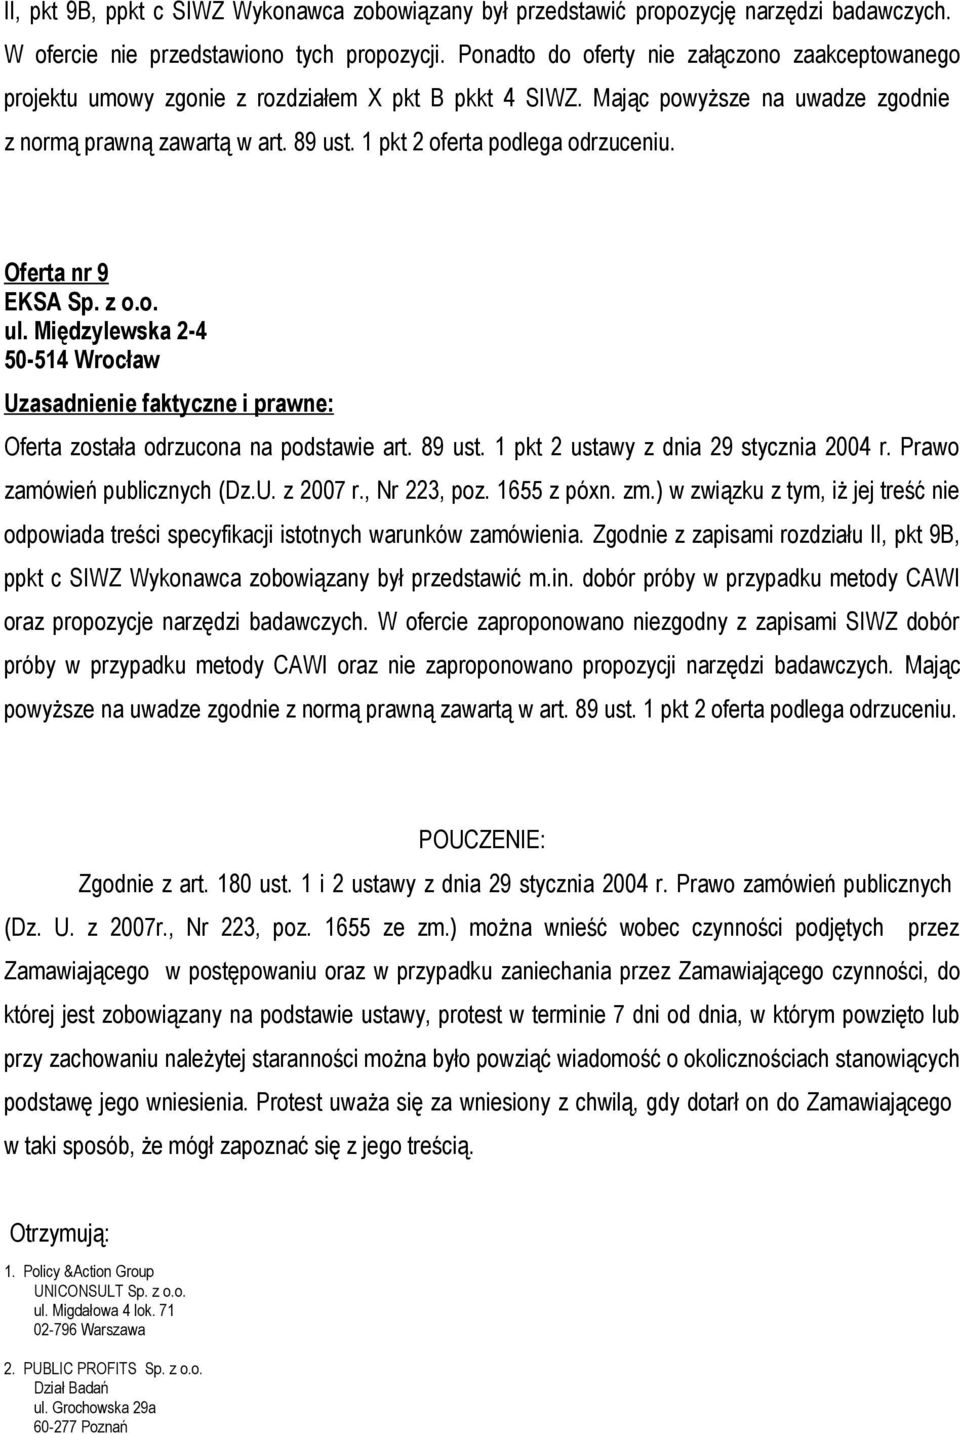 1 pkt 2 oferta podlega odrzuceniu. Oferta nr 9 EKSA Sp. z o.o. ul. Międzylewska 2-4 50-514 Wrocław Oferta została odrzucona na podstawie art. 89 ust. 1 pkt 2 ustawy z dnia 29 stycznia 2004 r.